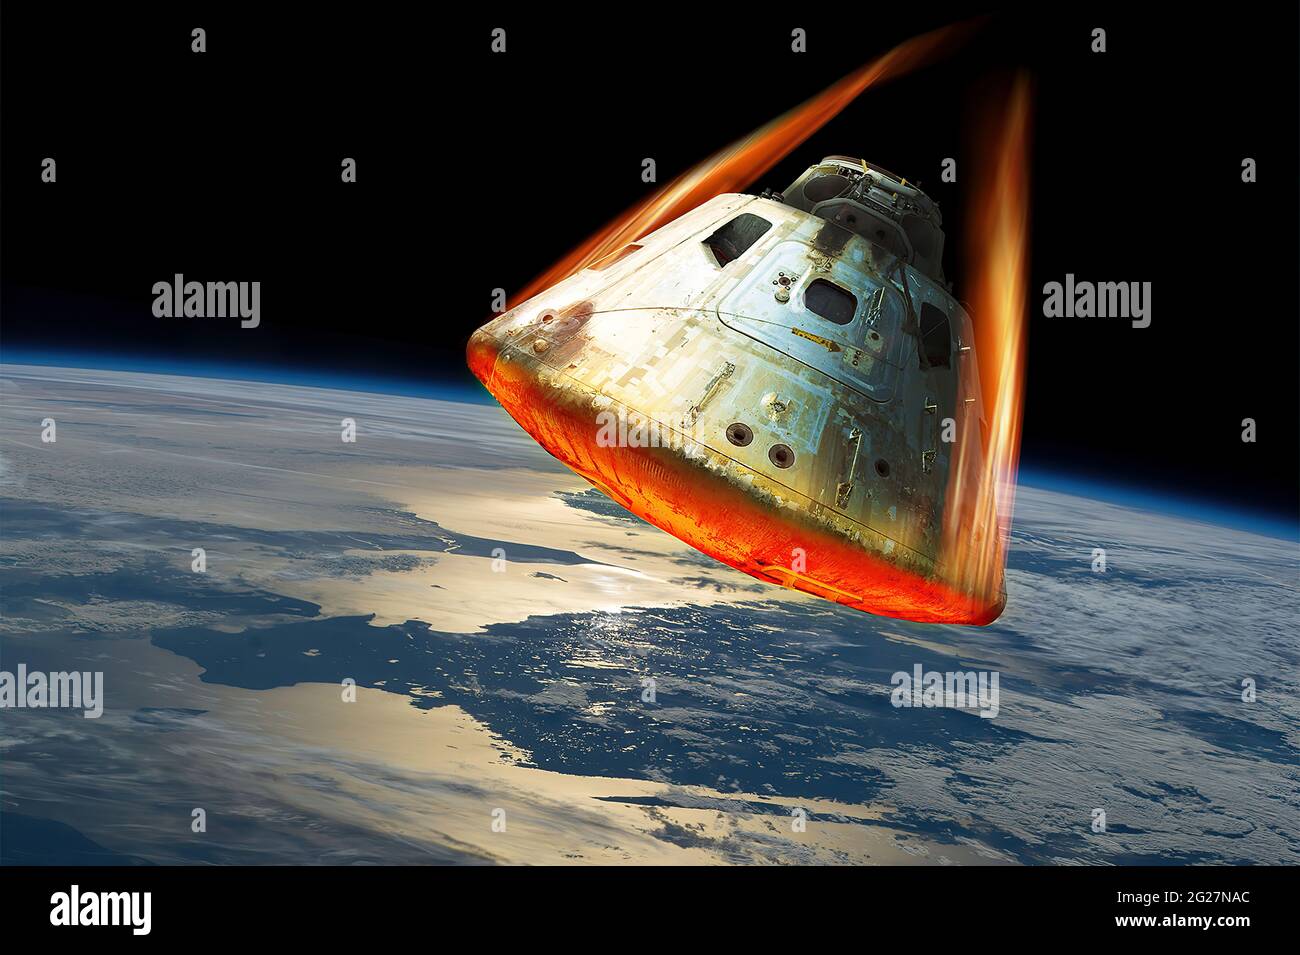 Una capsula spaziale rientra nell'atmosfera della Terra mentre lo scudo termico si illumina dal calore. Foto Stock